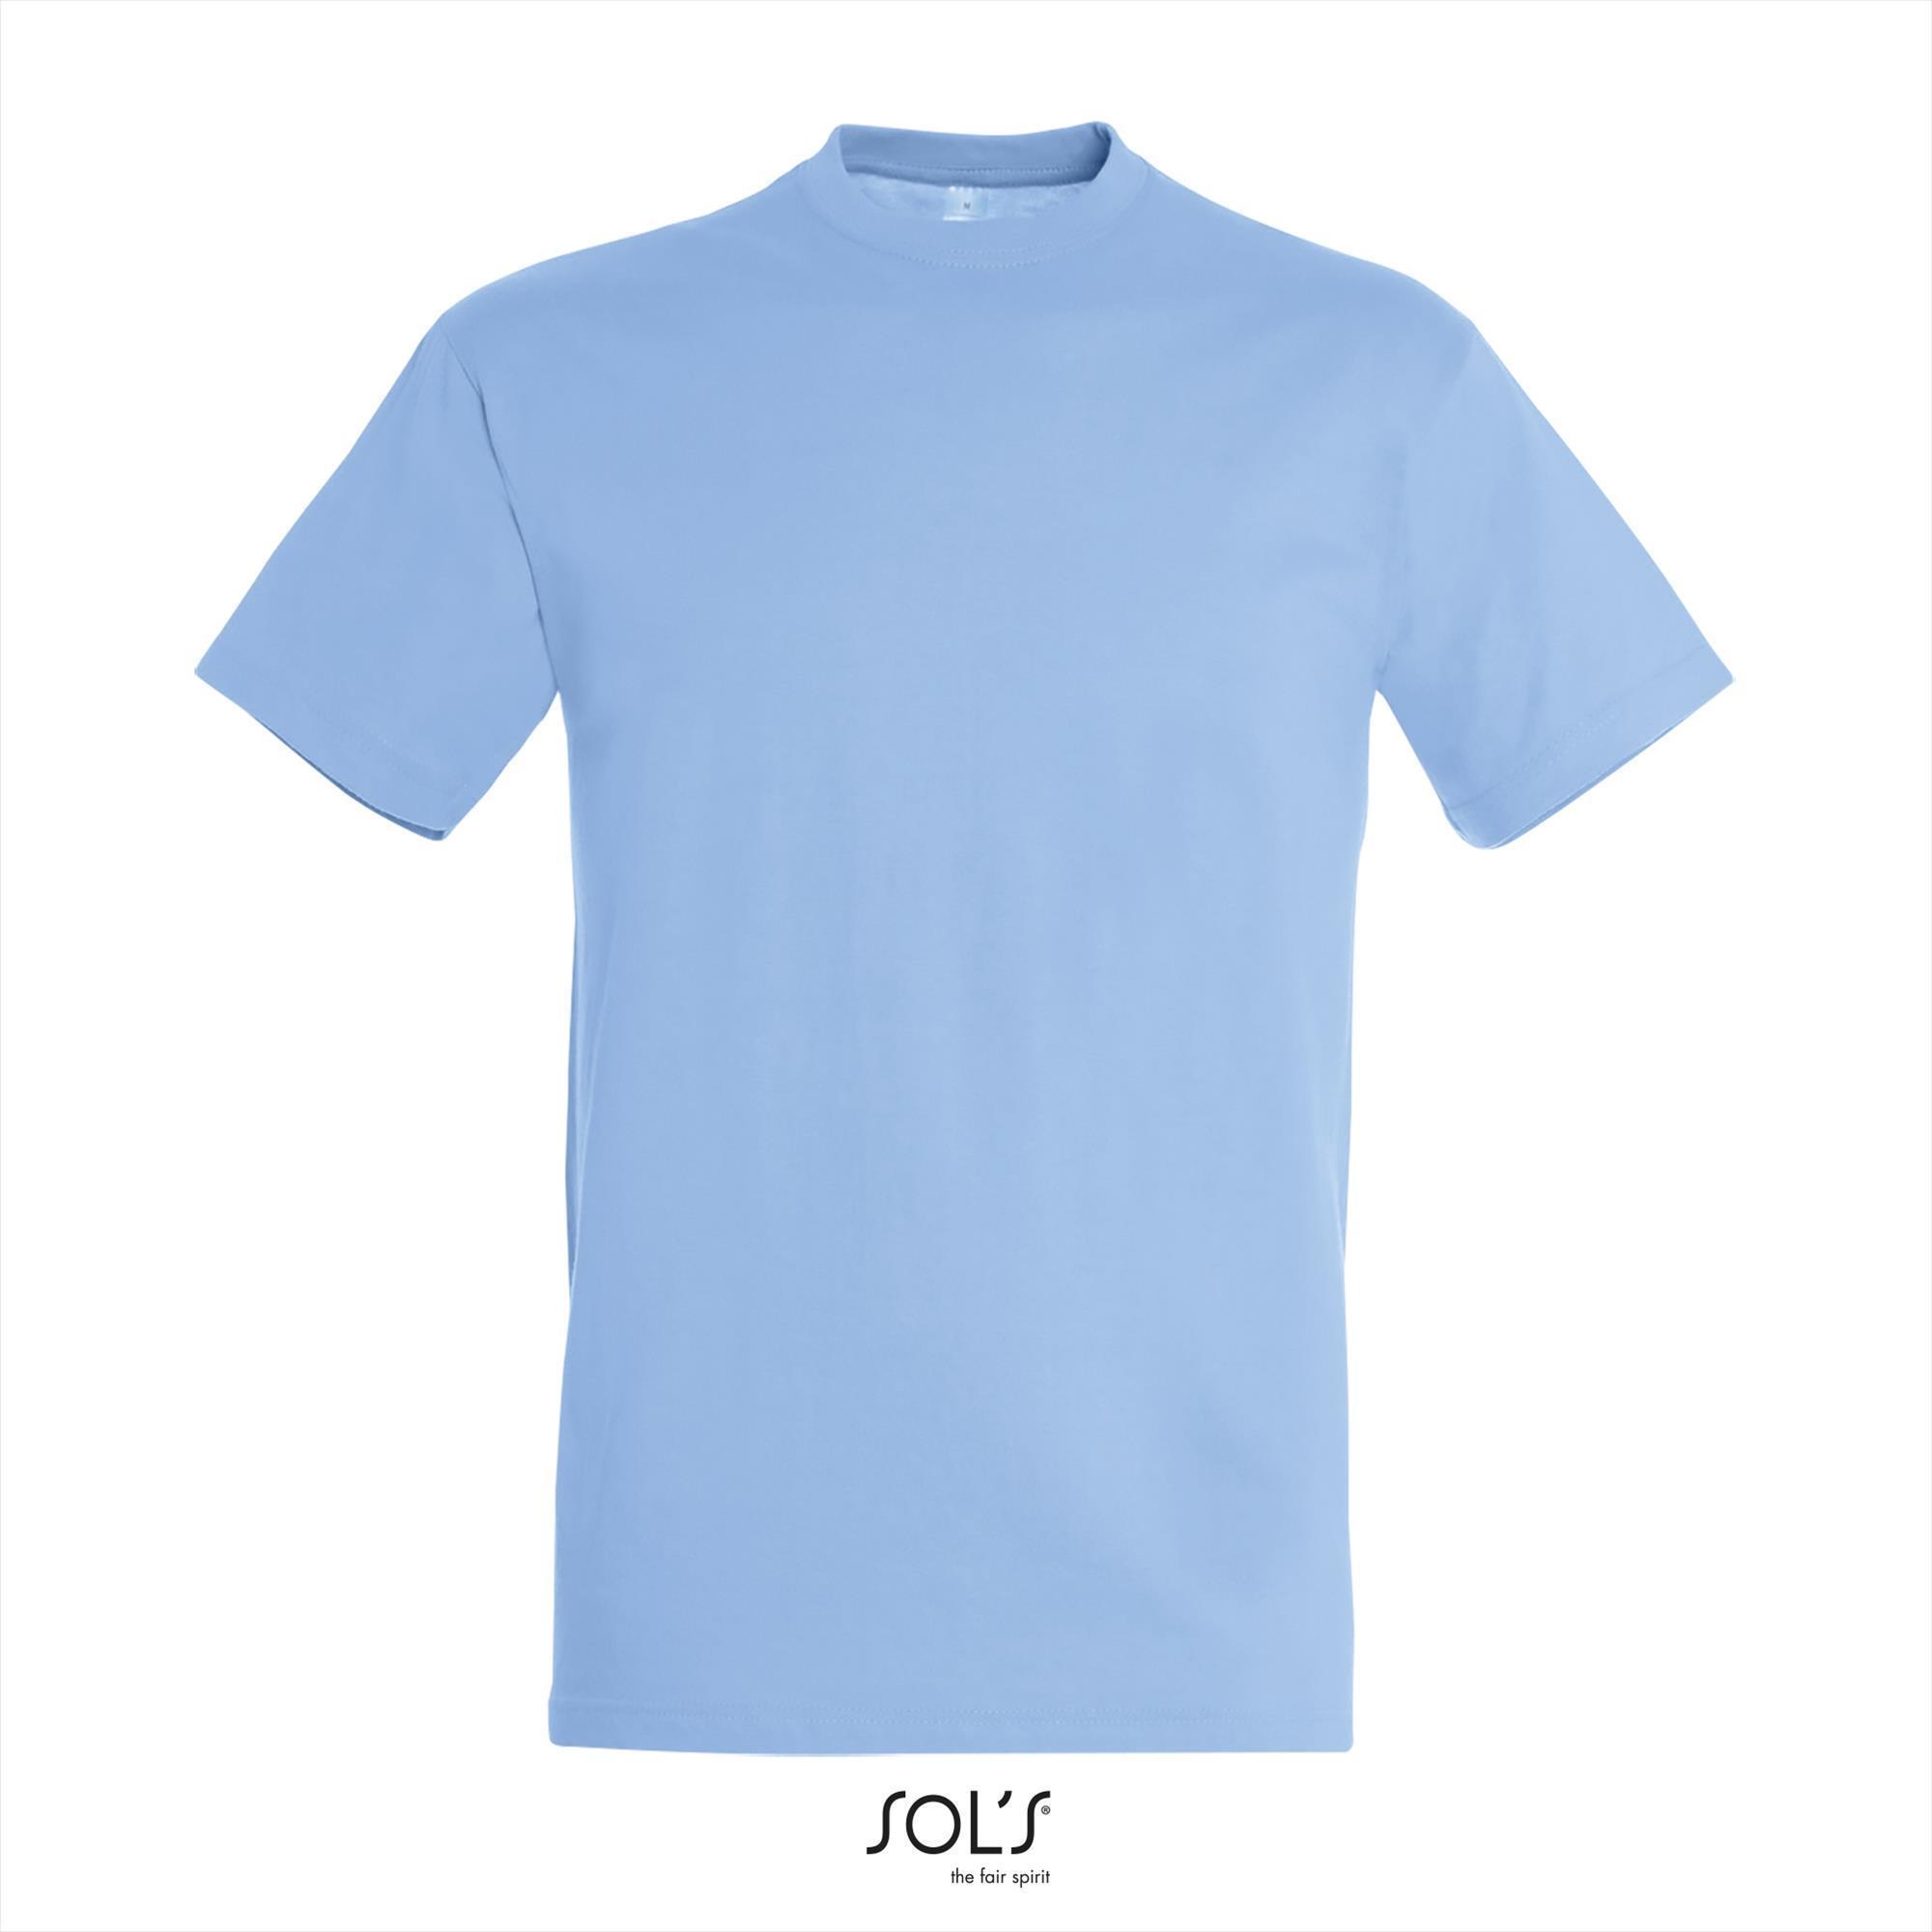 Heren T-shirt met een ronde hals mannen shirt sky blue blauw